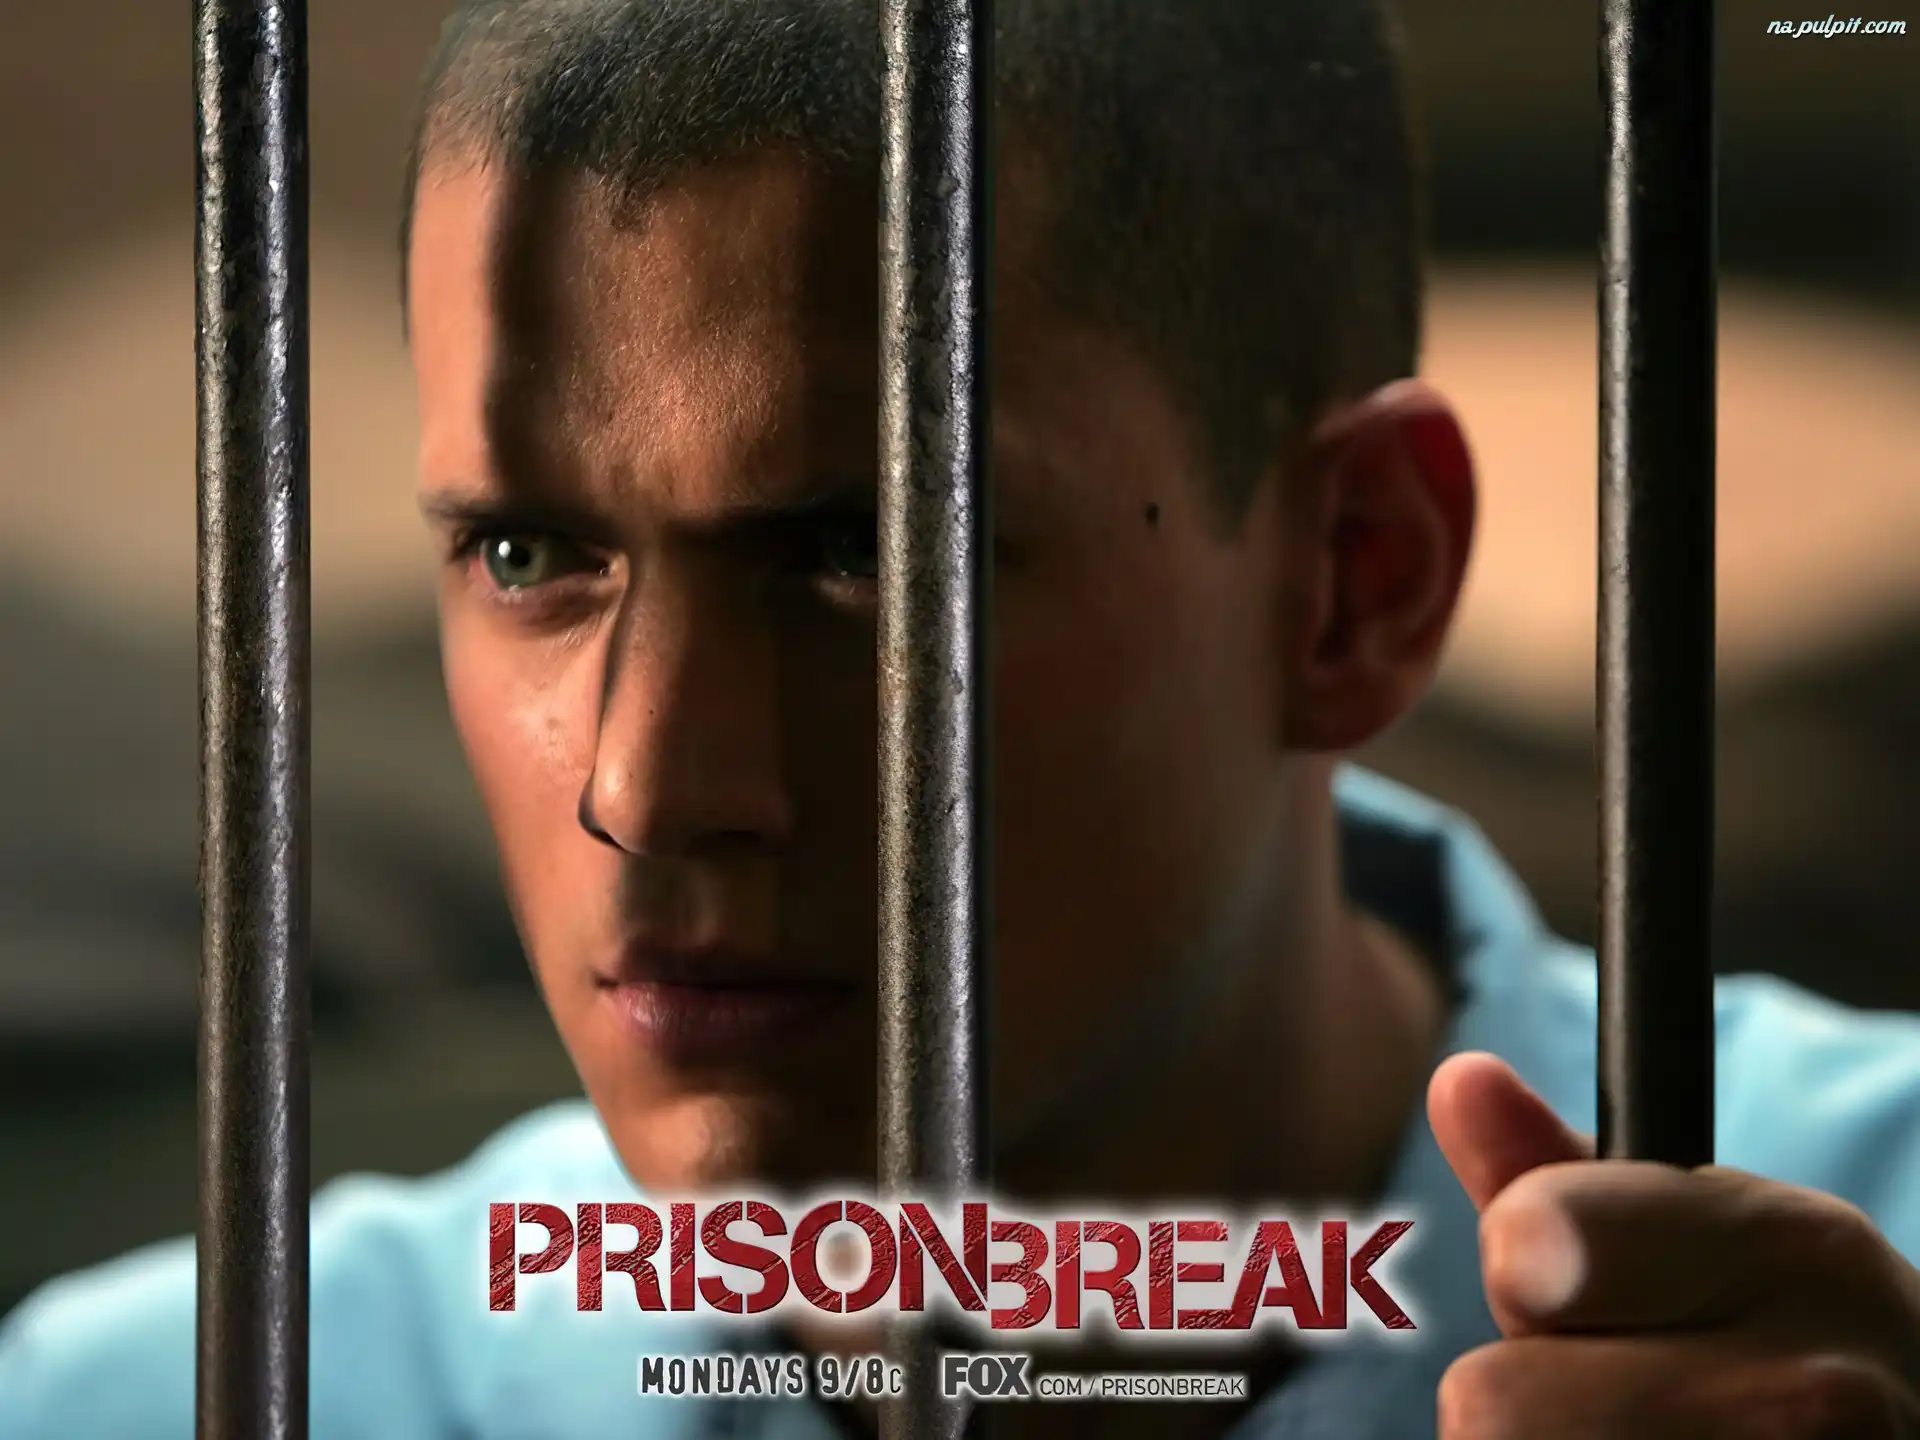 kraty, Prison Break, Wentworth Miller